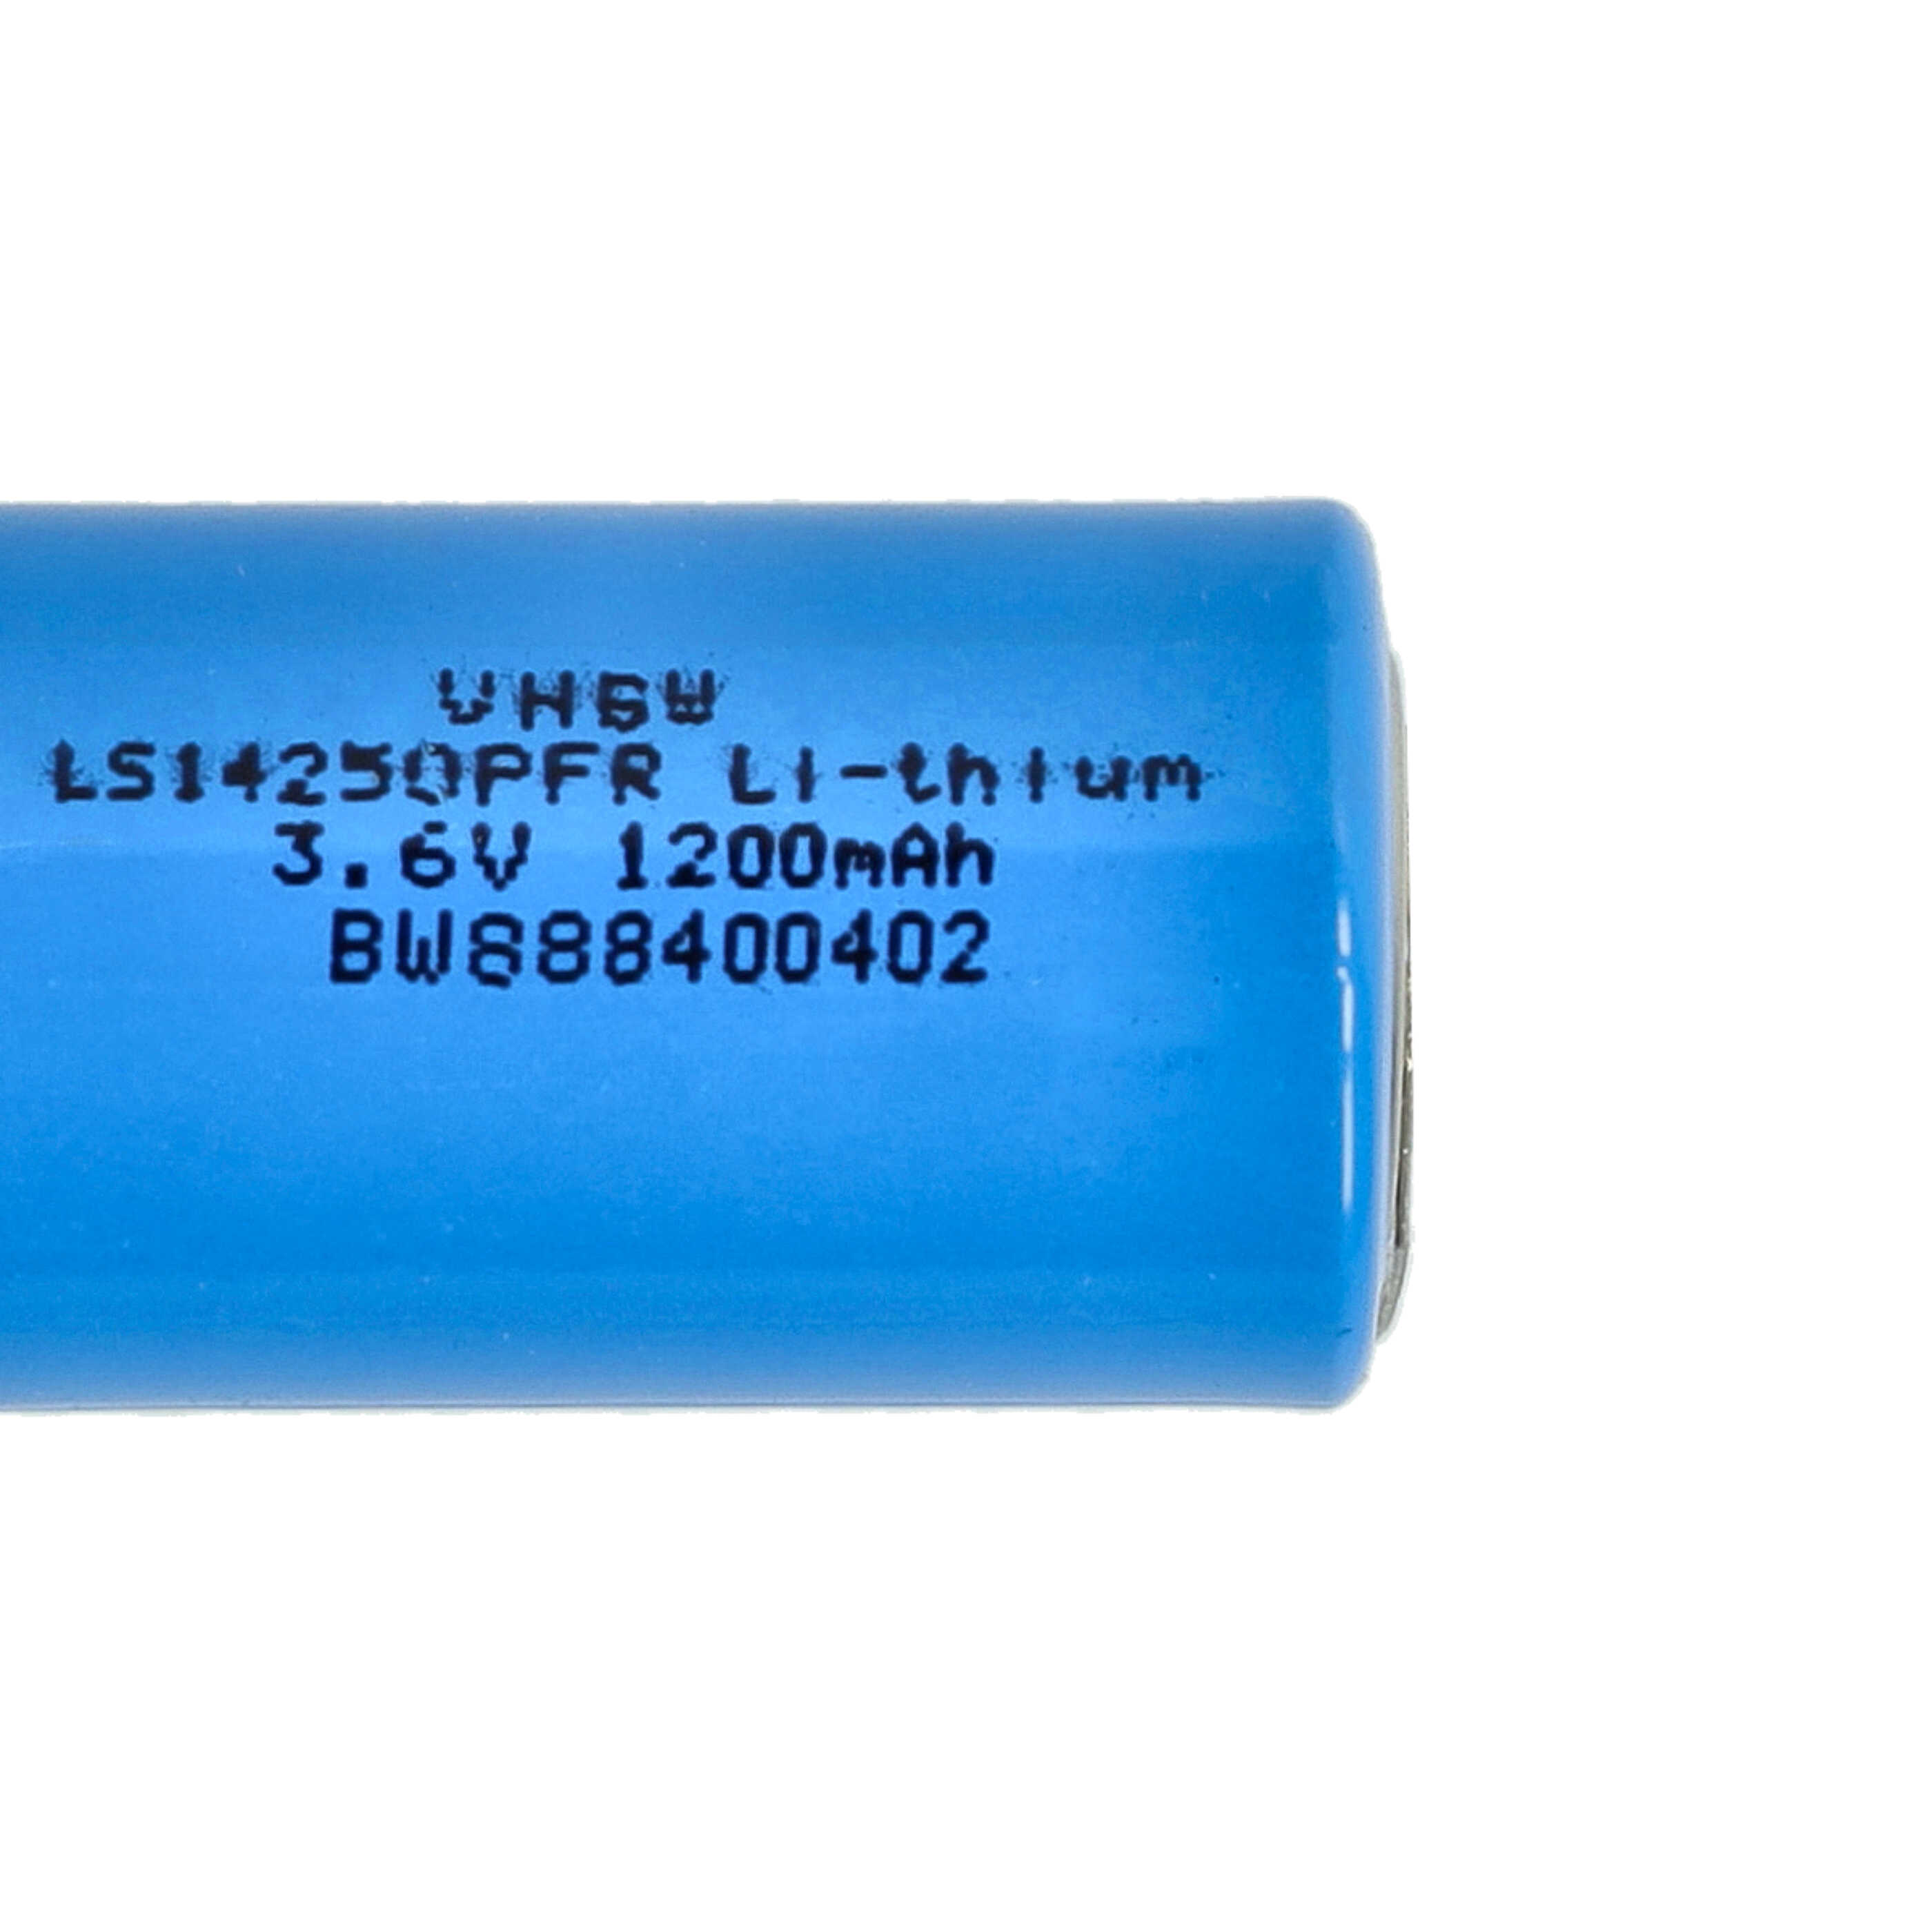 LS14250 Batteria - 1200mAh 3,6V Li-SOCl2, con contatti a saldare